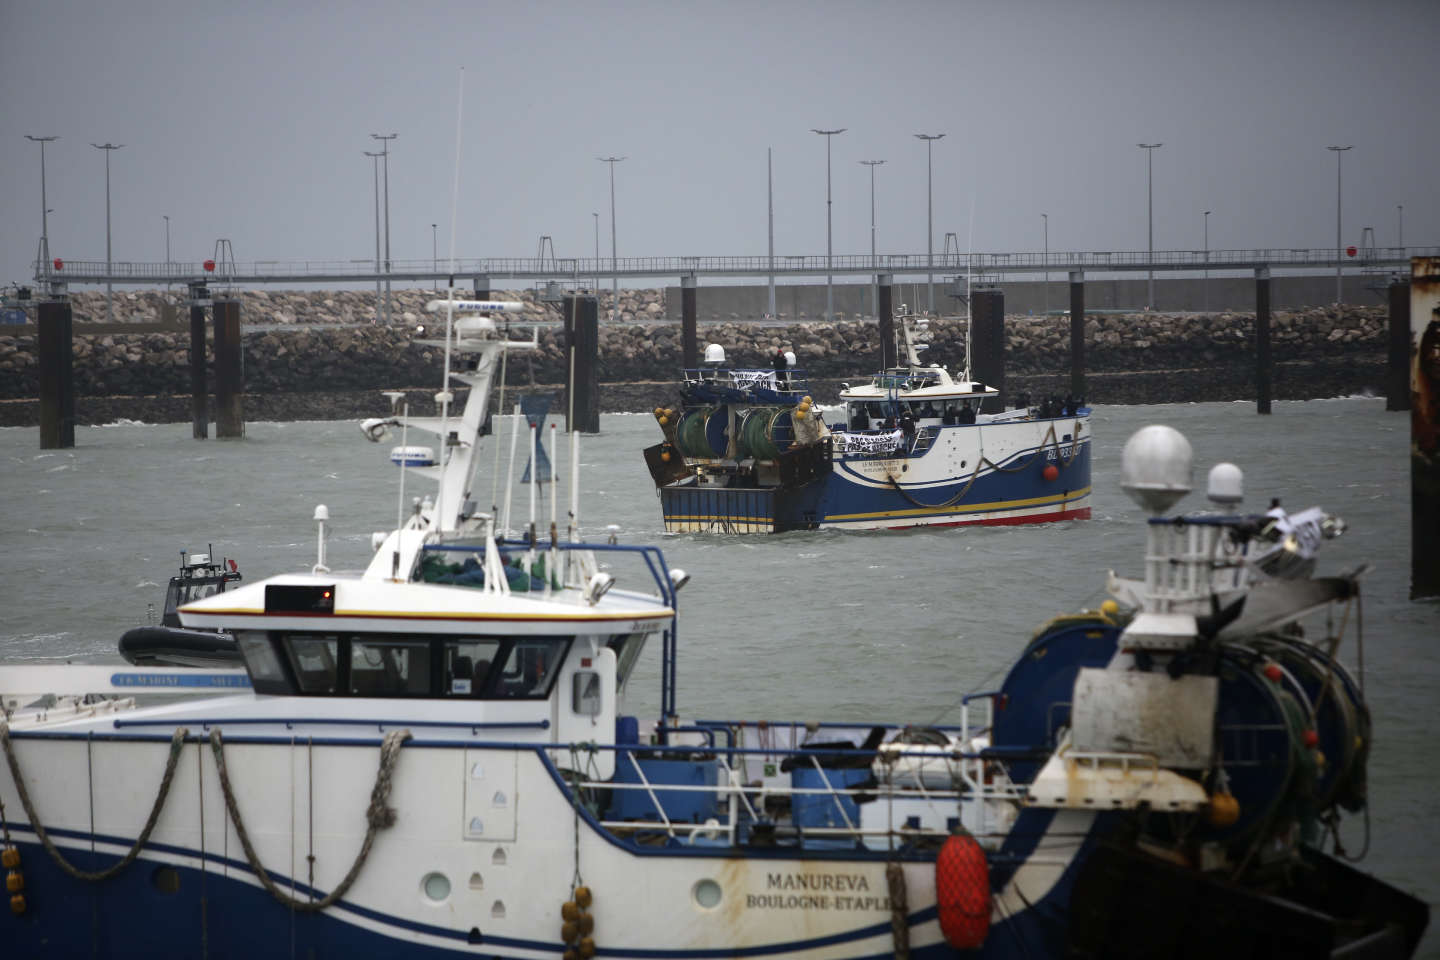 Contre la surpêche, l’UE va durcir les contrôles et mieux surveiller les navires